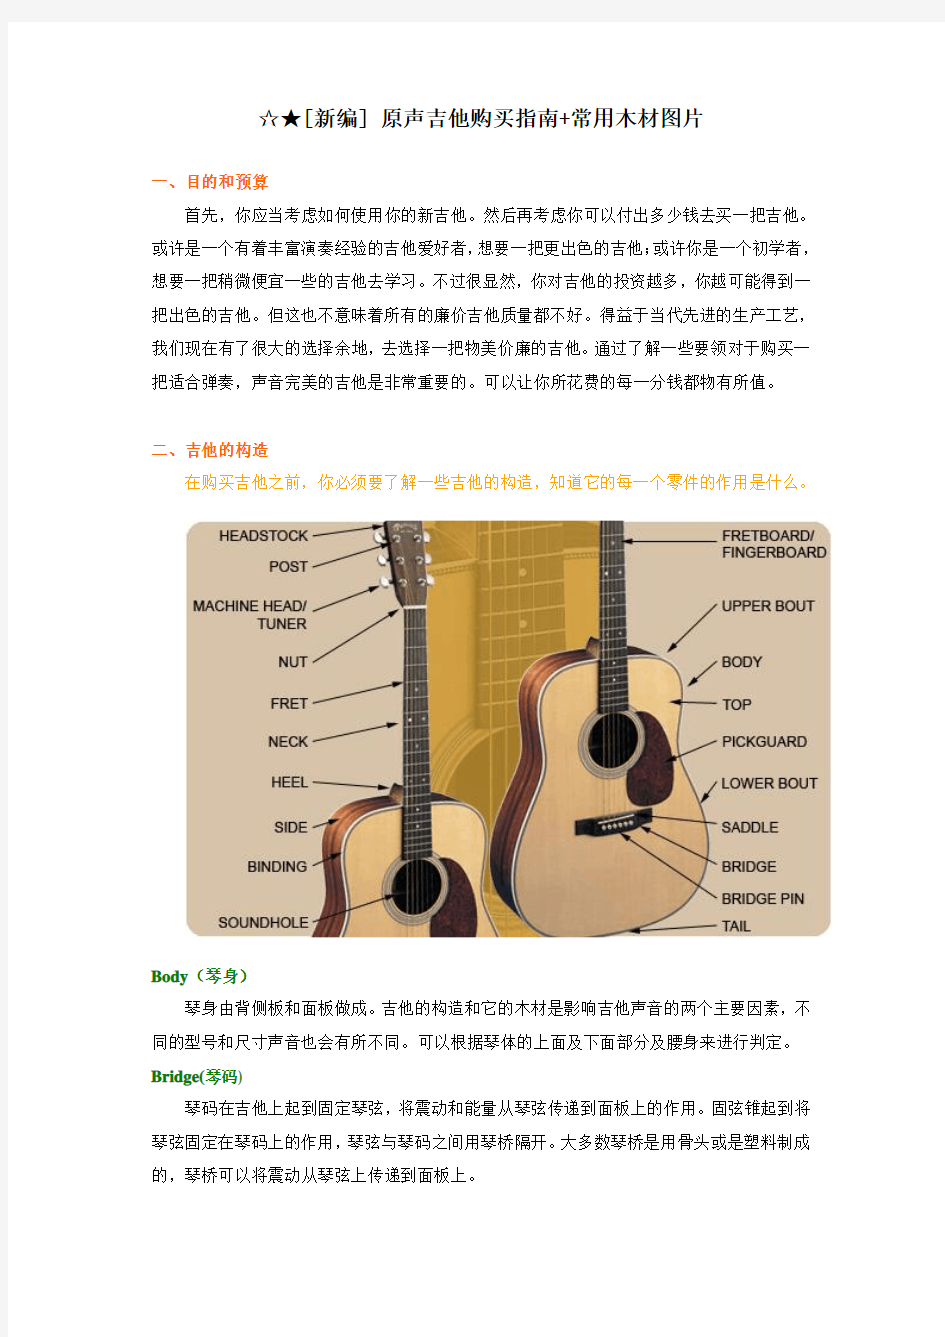 原声吉他购买指南+常用木材图片 (2)